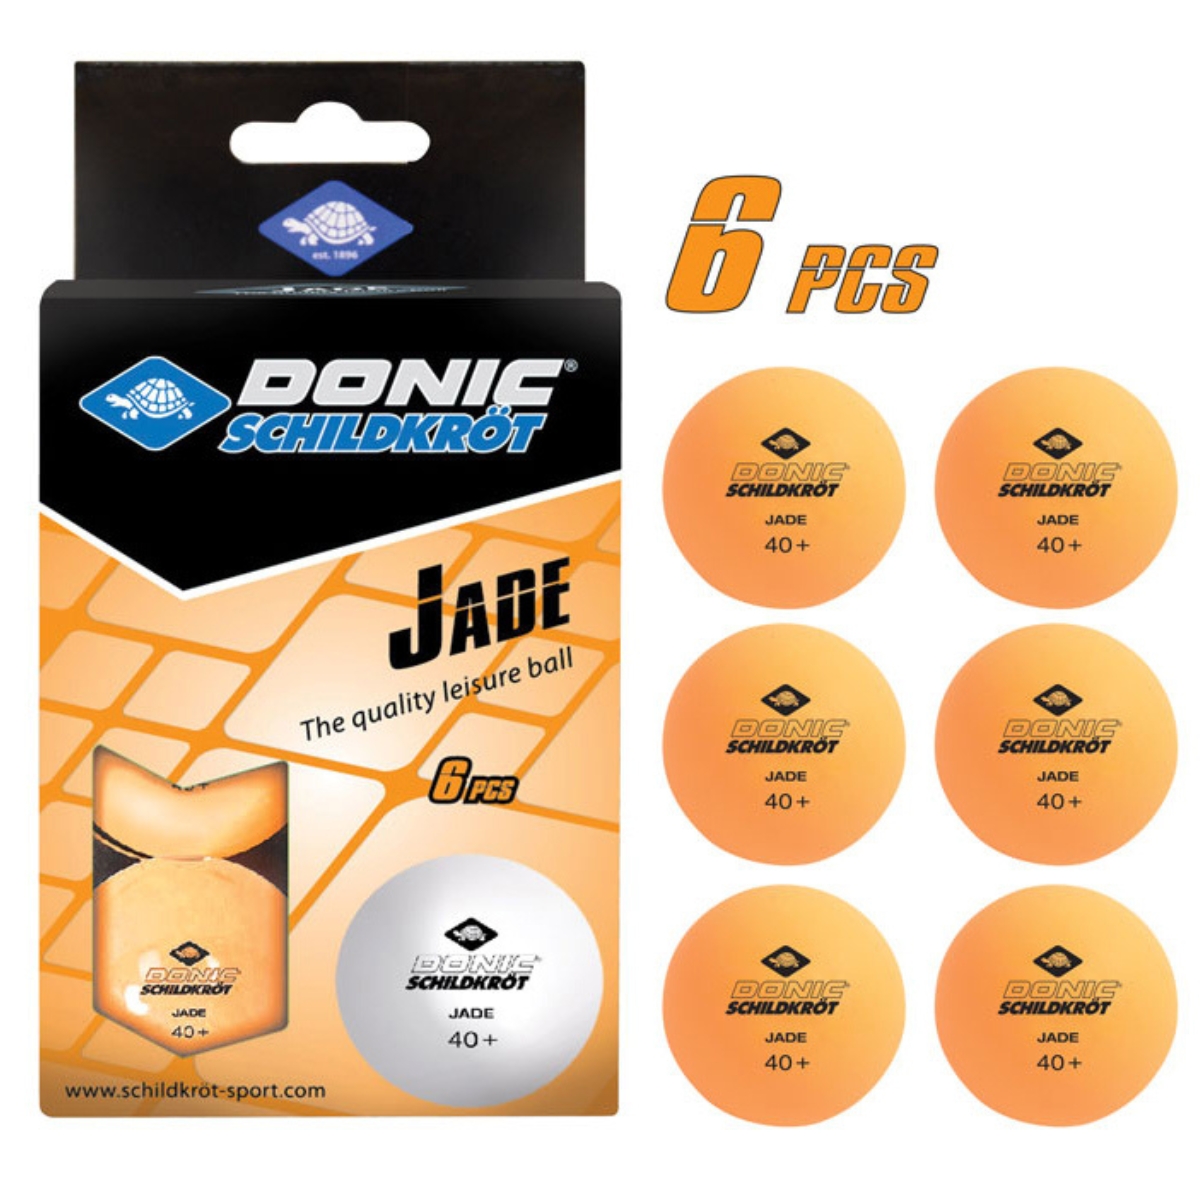 Donic-Schildkröt Tischtennisball Jade, Poly 40+ Qualität, 6 Stk. im Karton, Orange Art. 618378